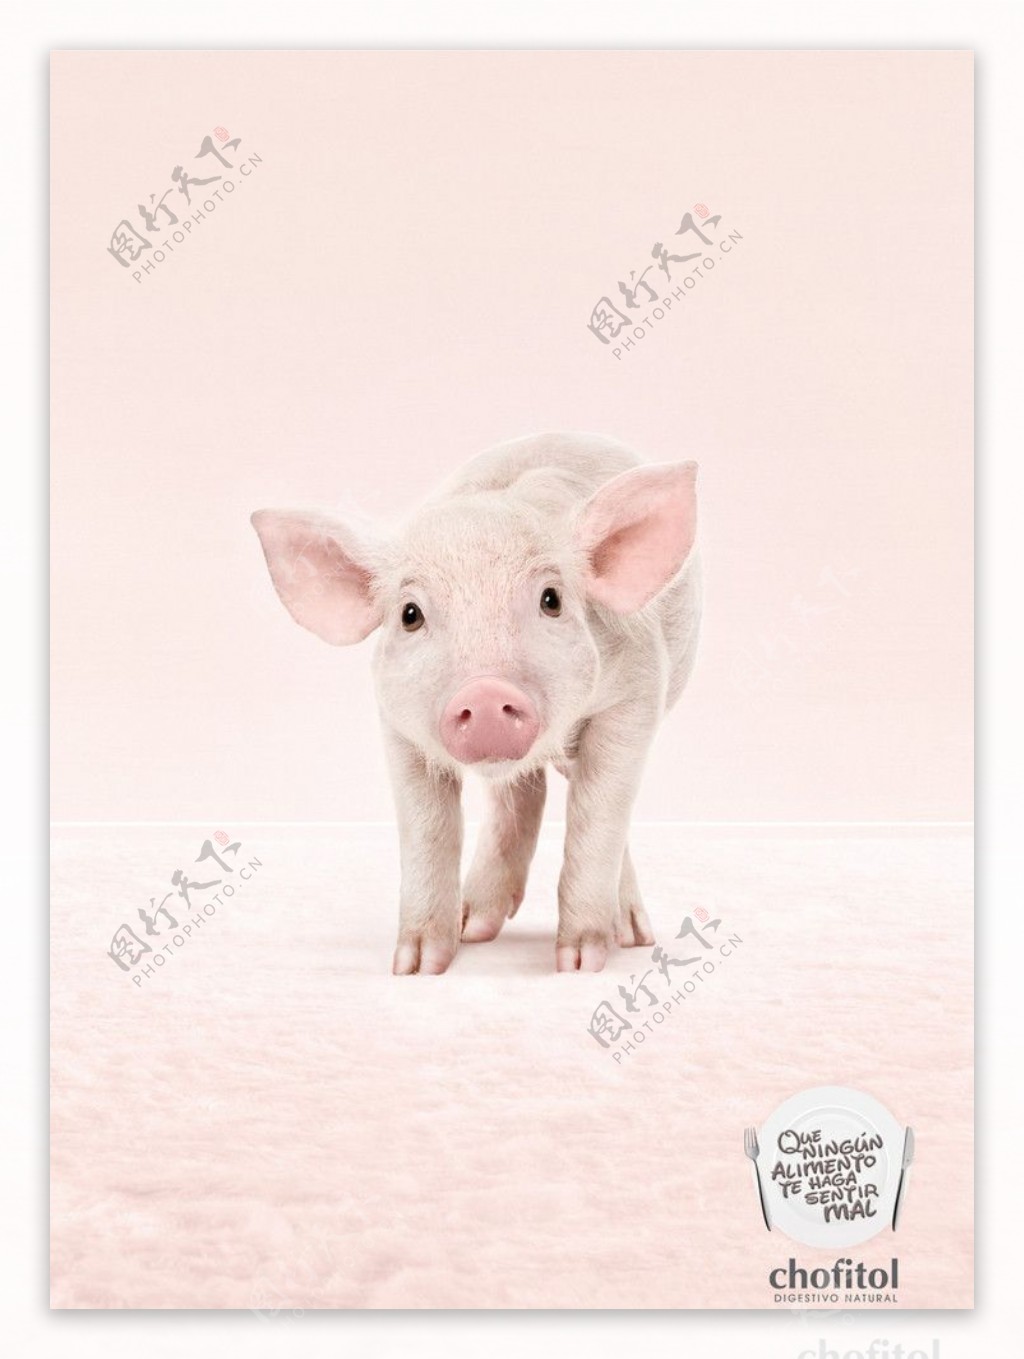 可爱的小猪图片